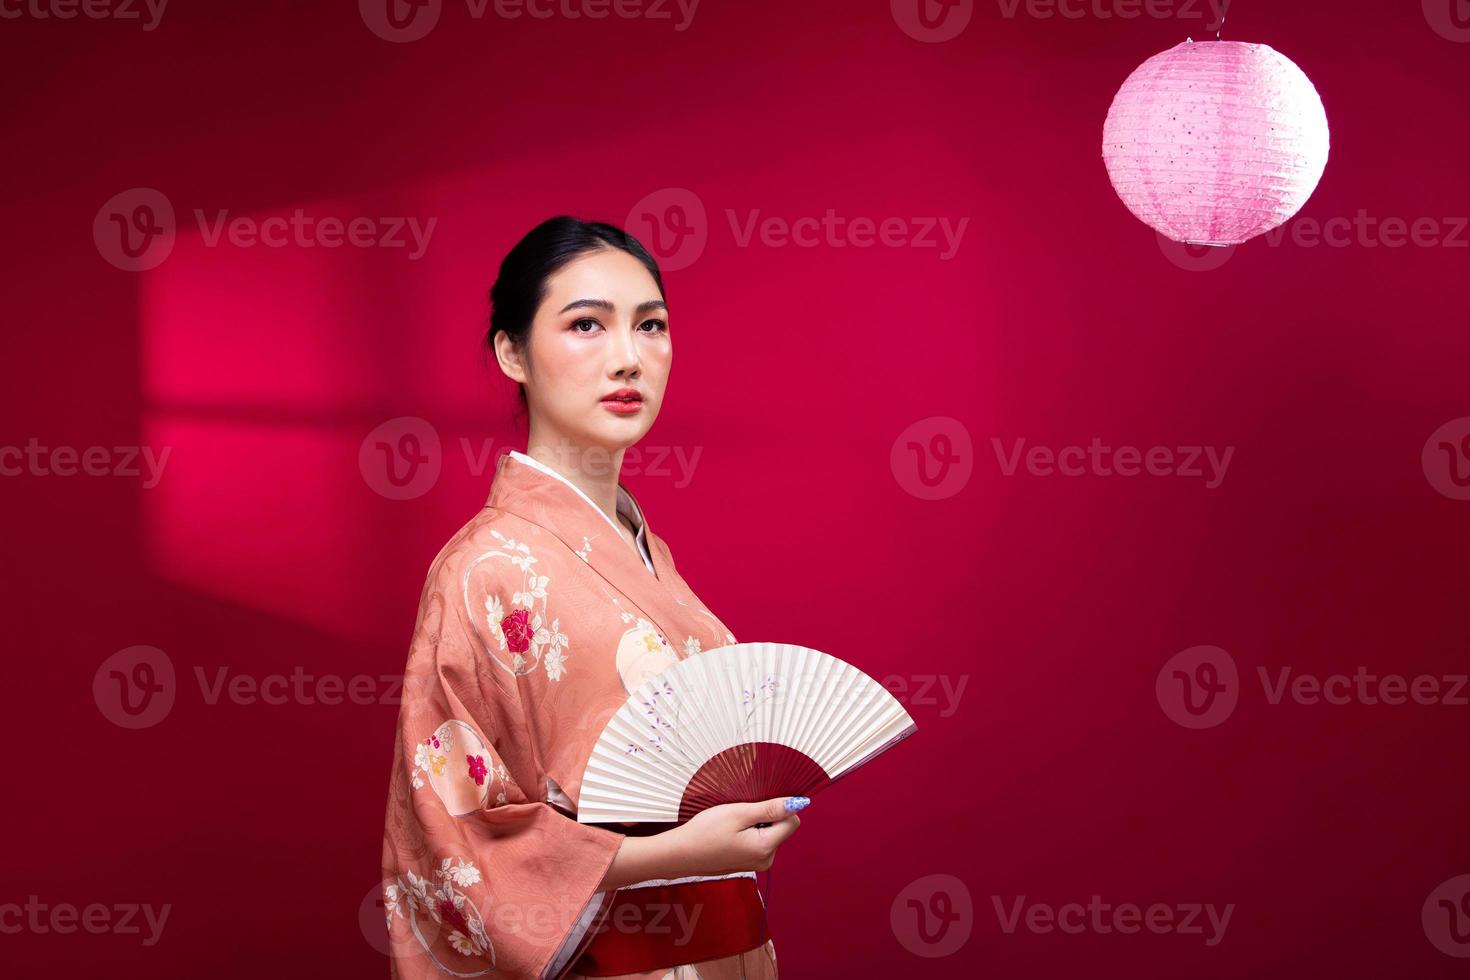 mujer japonesa asiática joven de medio cuerpo de 20 años usa kimono tradicional rosa, sostiene un abanico de arte y una lámpara foto